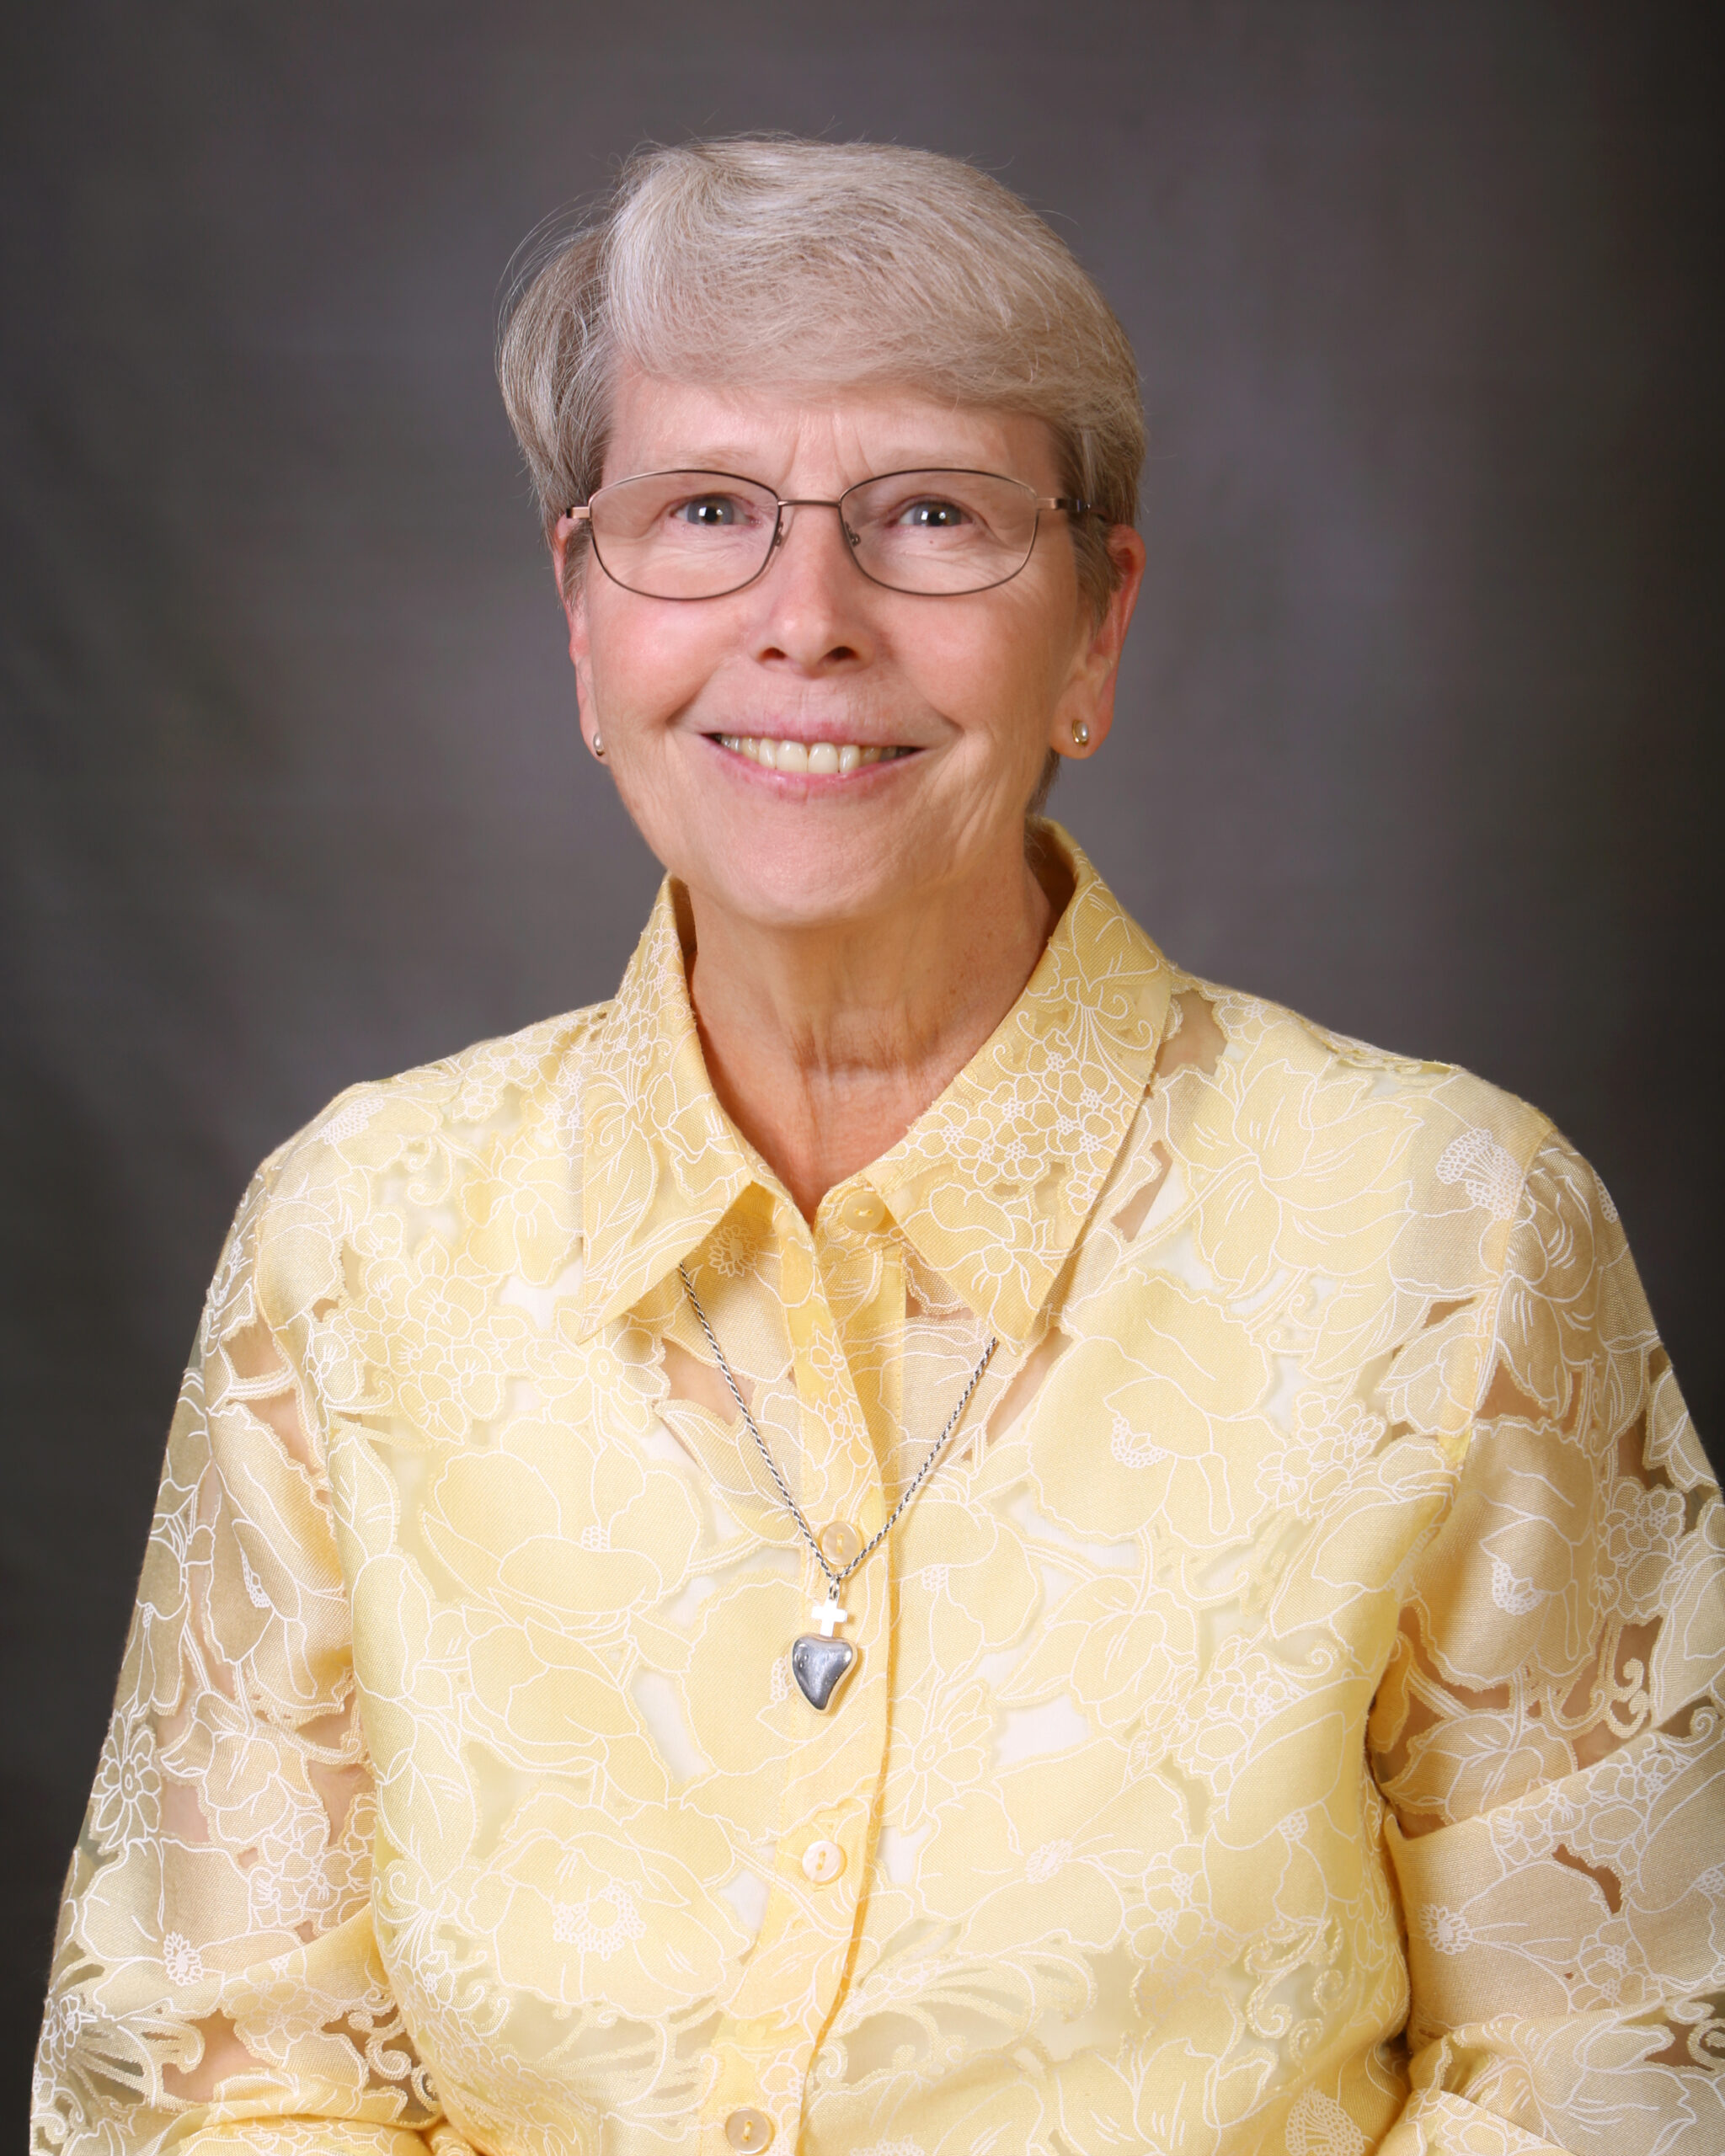 Sister Barbara Jean Franklin, ASC